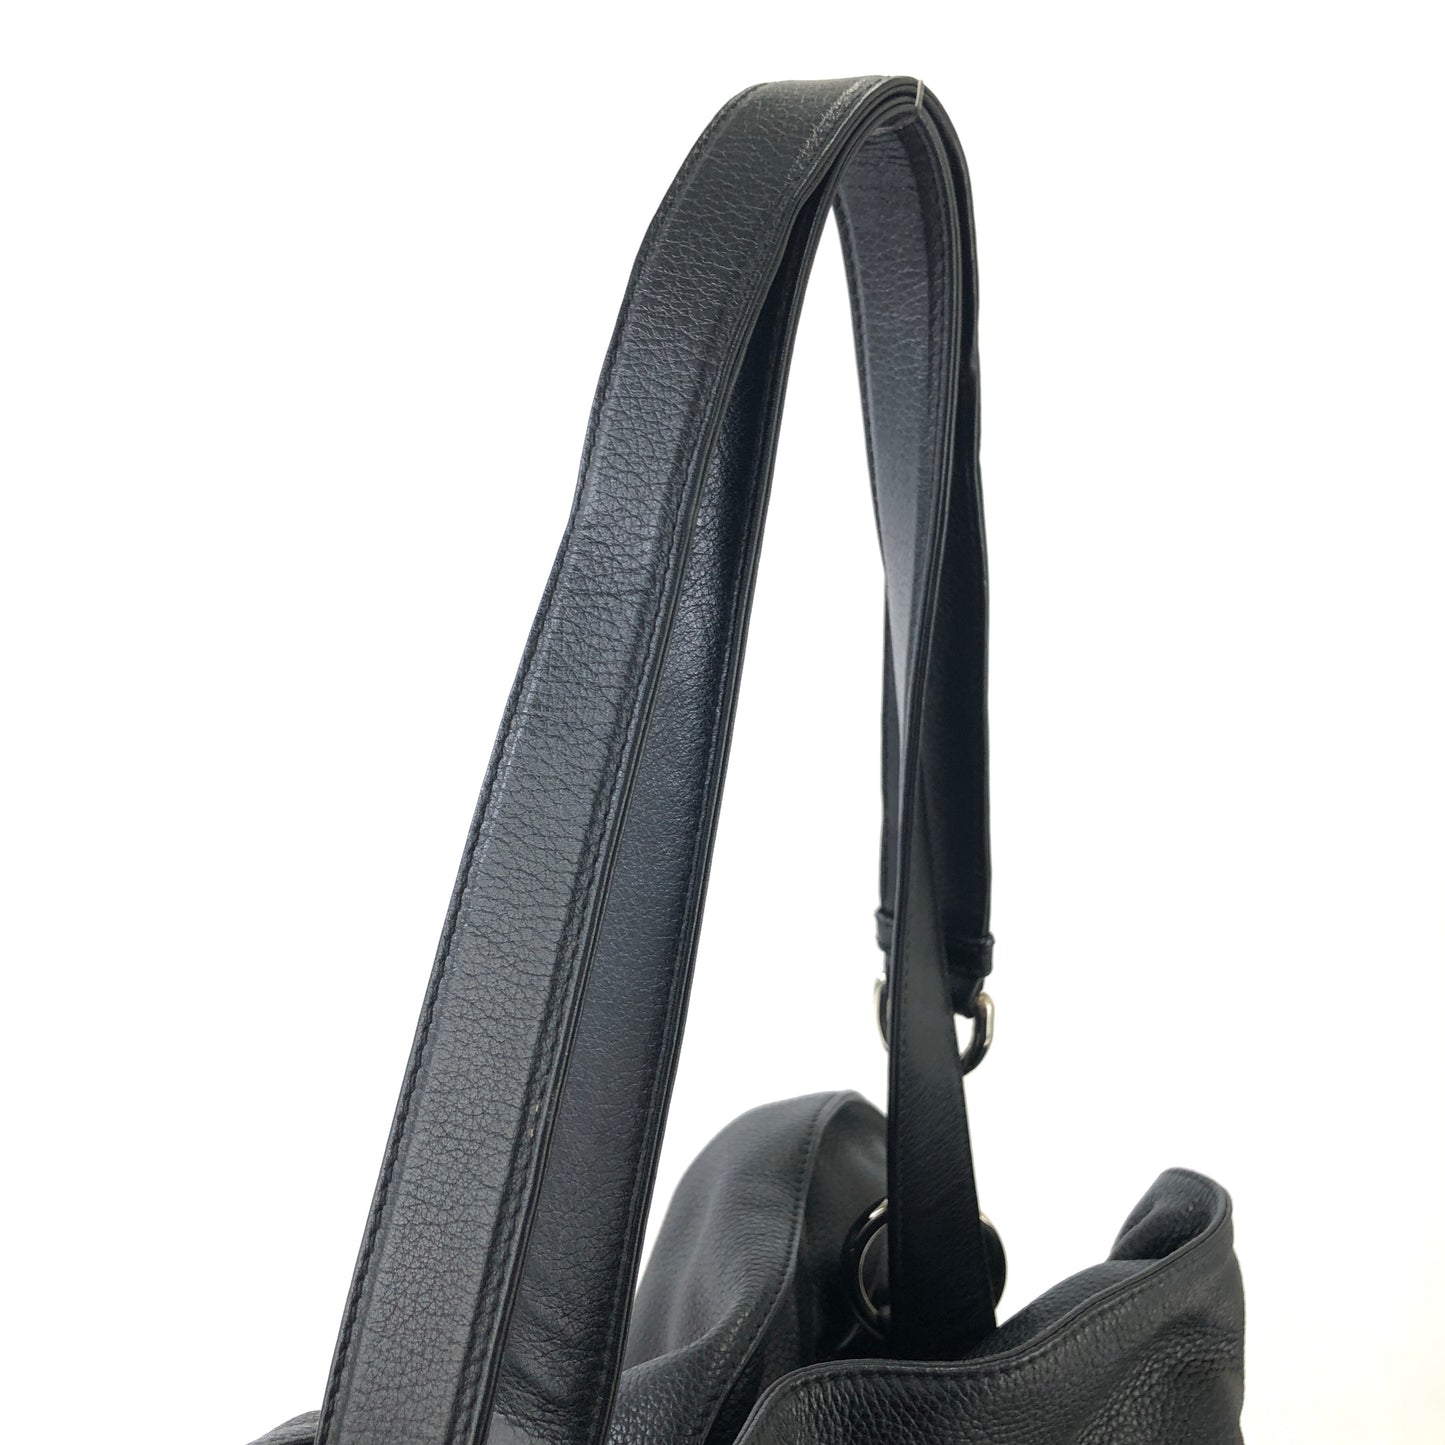 LOEWE Flamenco Tassel Anagram Leather Drawstring Crossbody Shoulder bag Black Vintage a858nd